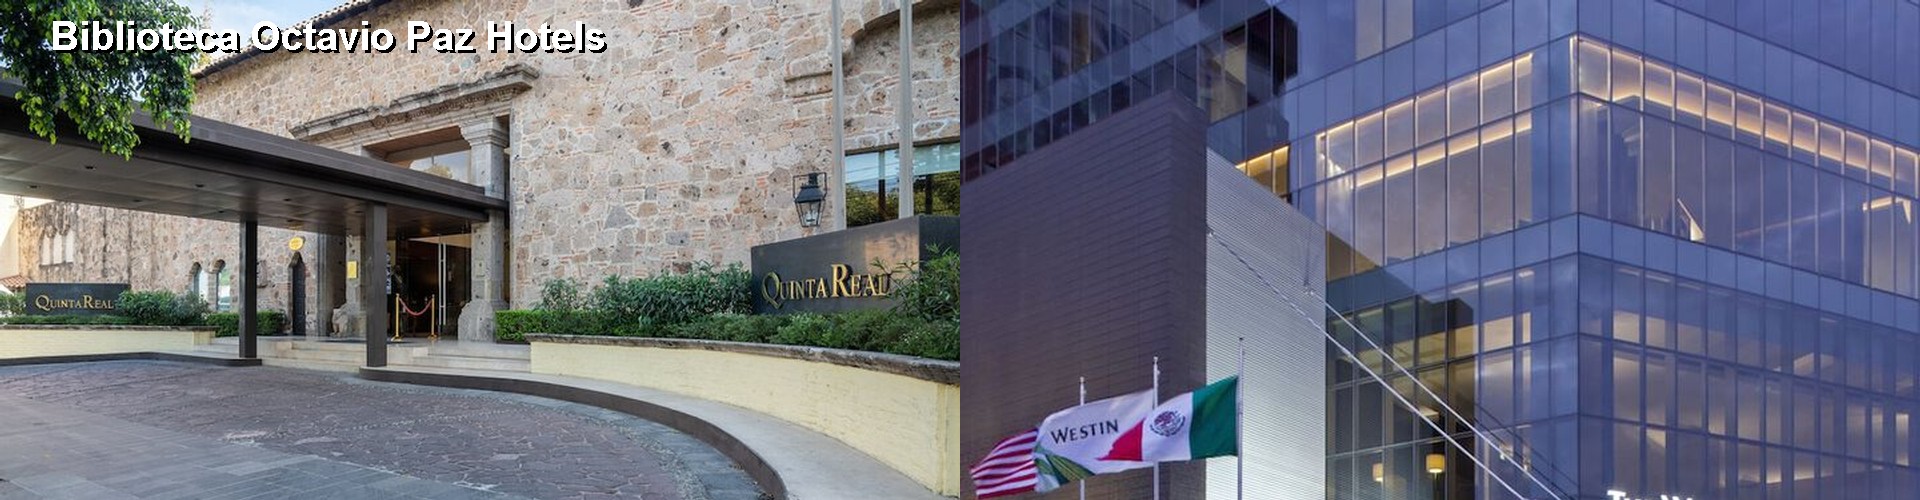 5 Best Hotels near Biblioteca Octavio Paz